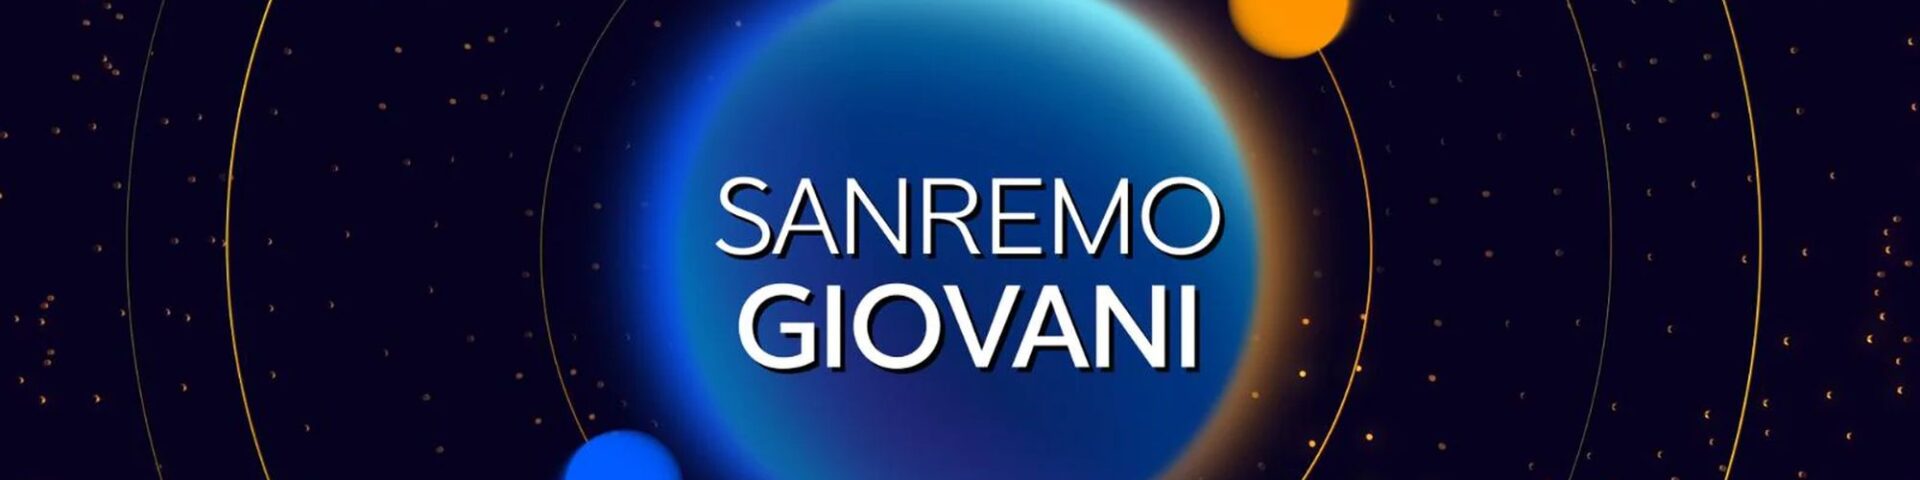 Sanremo Giovani 2021: selezionati i 12 finalisti